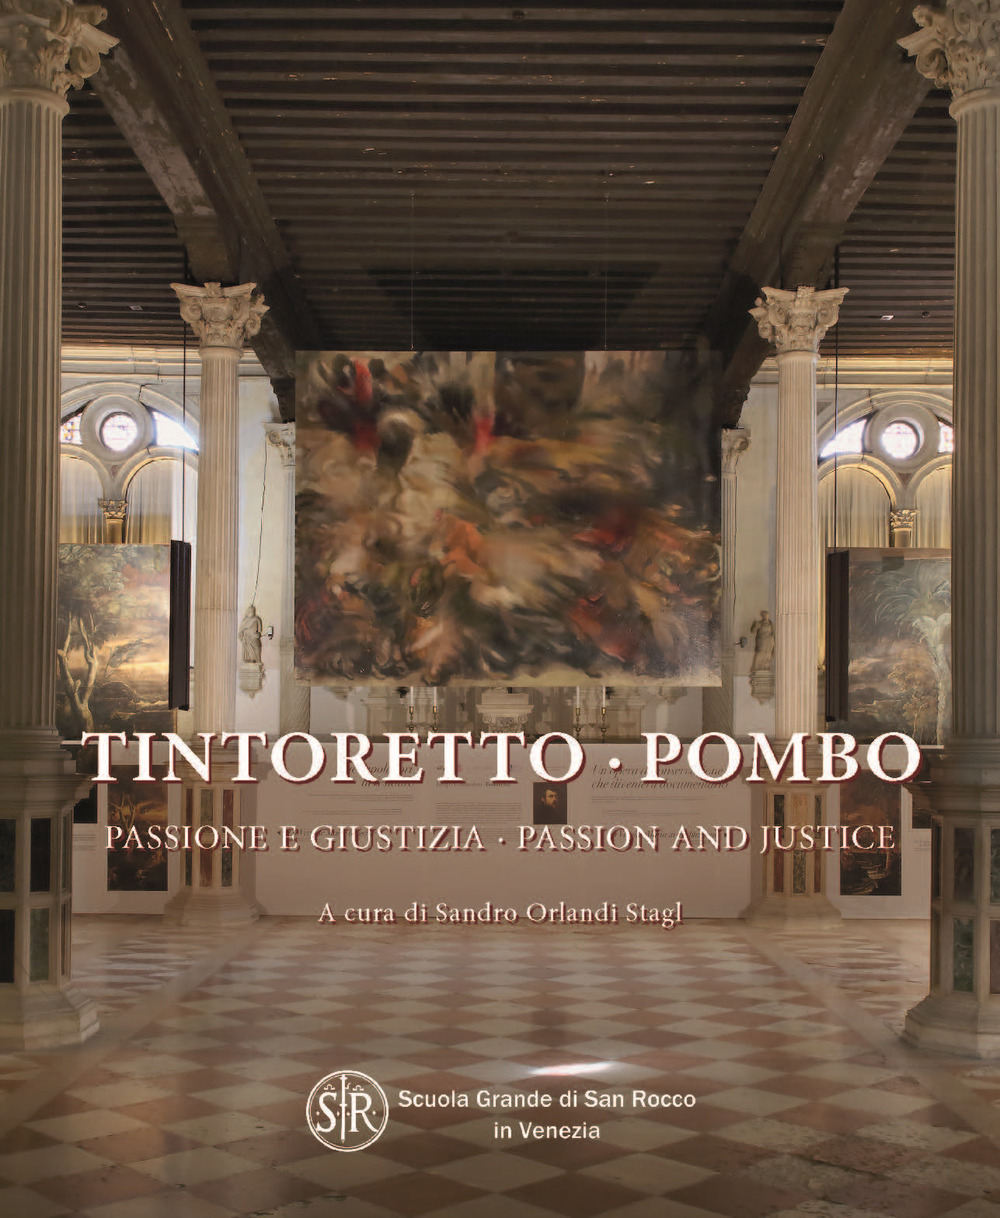 Tintoretto-Pombo, passione e giustizia-Tintoretto-Pombo, passion and justice. Ediz. illustrata